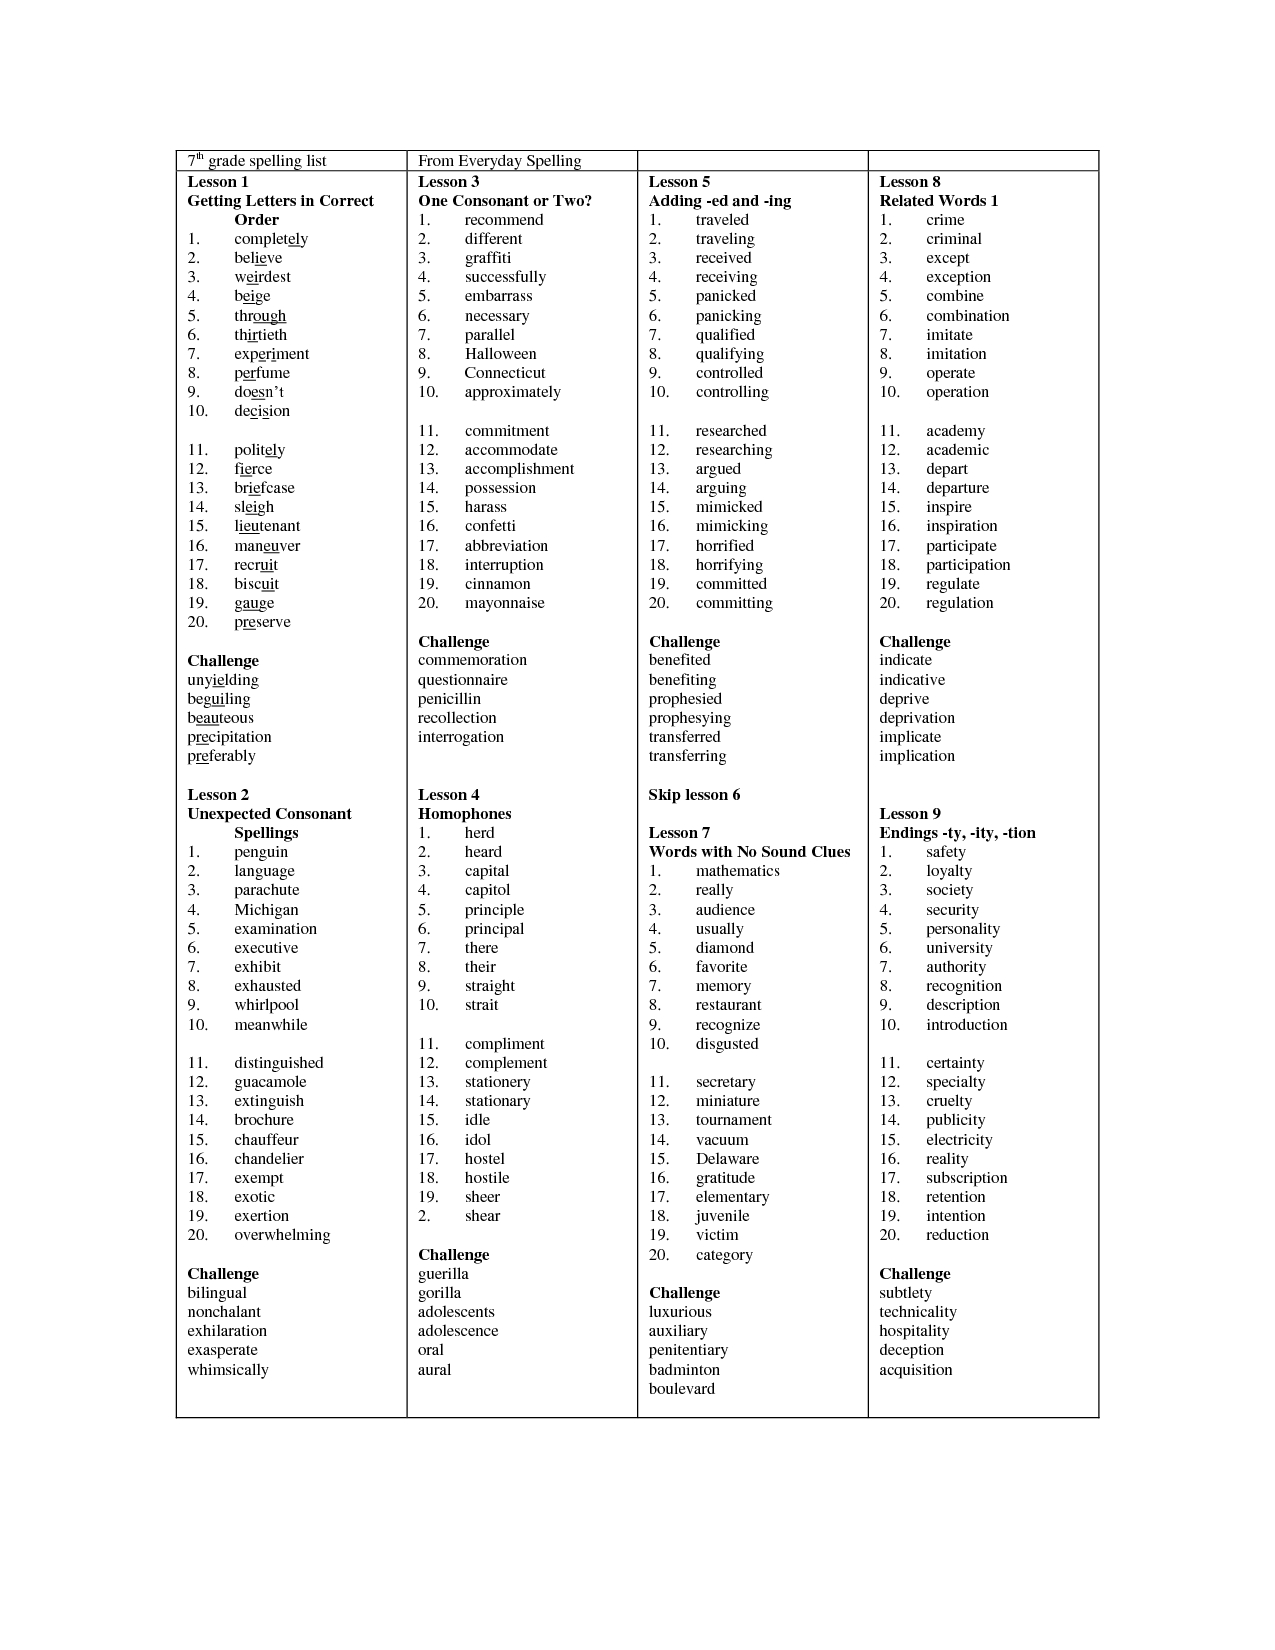 7Th Grade Spelling Worksheets Free Printable Spelling Words In - 7Th Grade Spelling Worksheets Free Printable